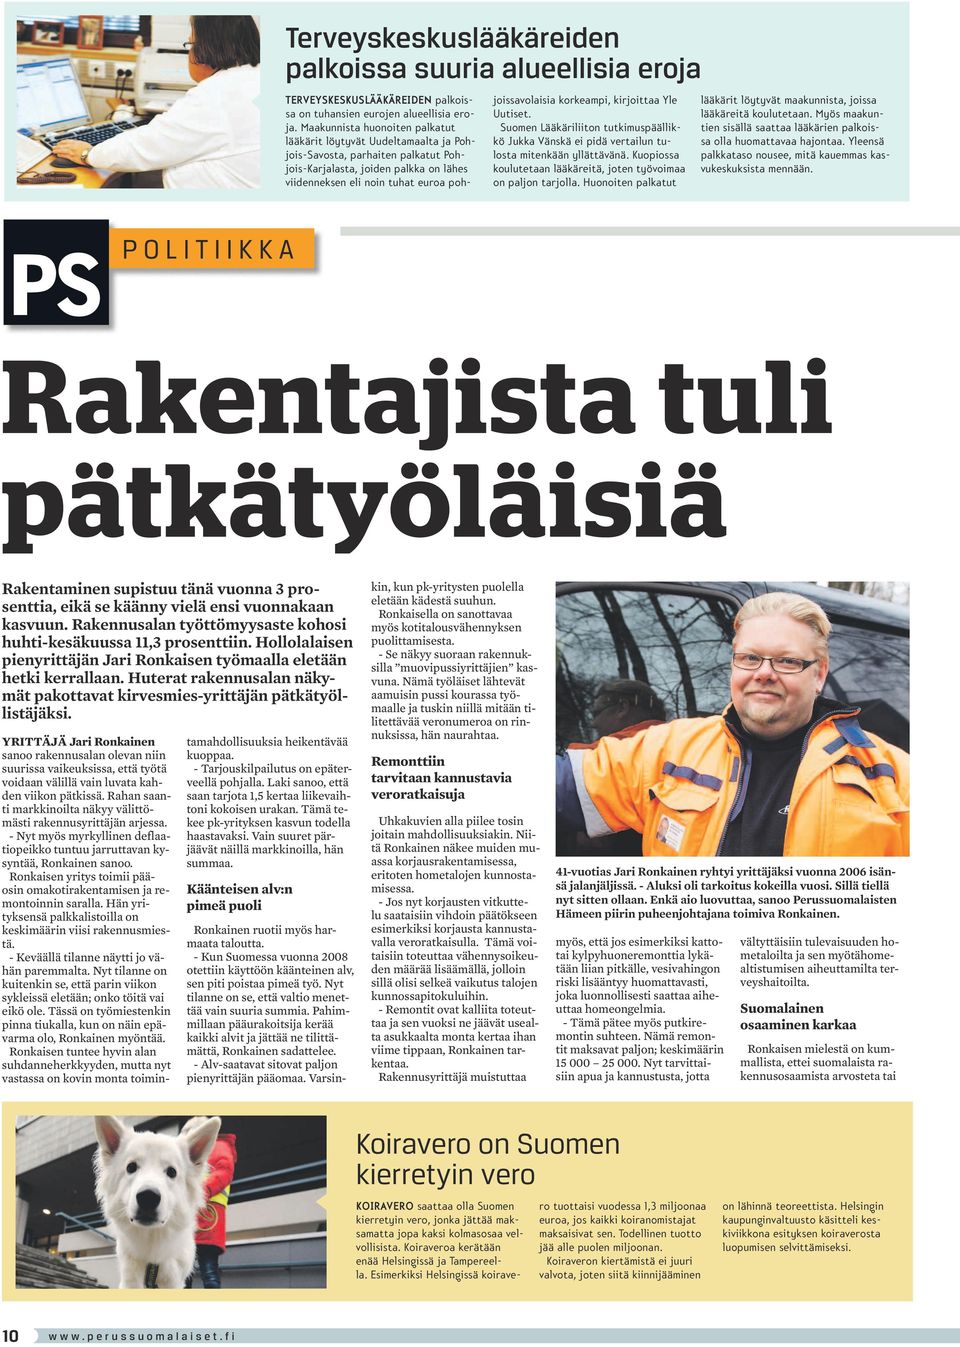 korkeampi, kirjoittaa Yle Uutiset. Suomen Lääkäriliiton tutkimuspäällikkö Jukka Vänskä ei pidä vertailun tulosta mitenkään yllättävänä.